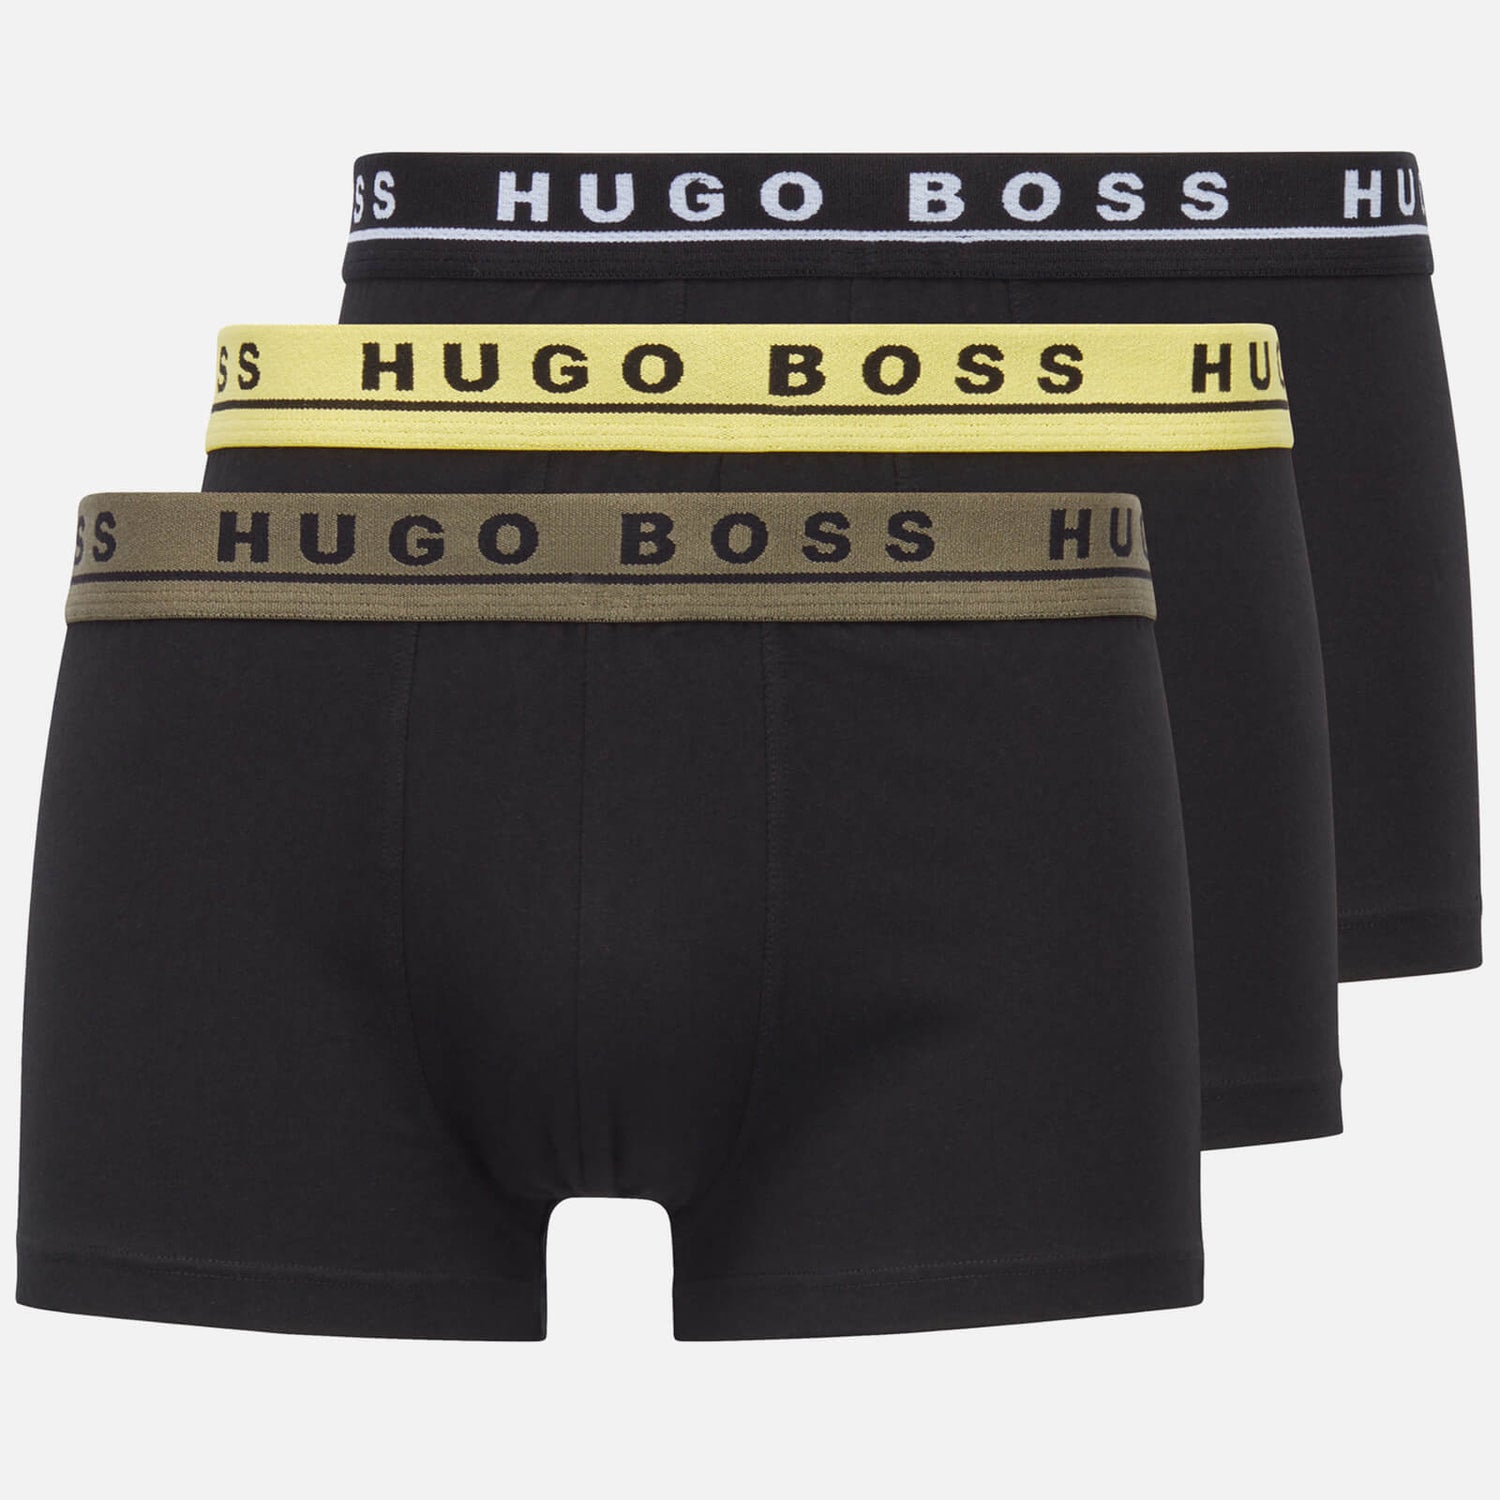 BOSS Bodywear Men's 3-Pack Contrast Waistband Trunks - Black/Multi